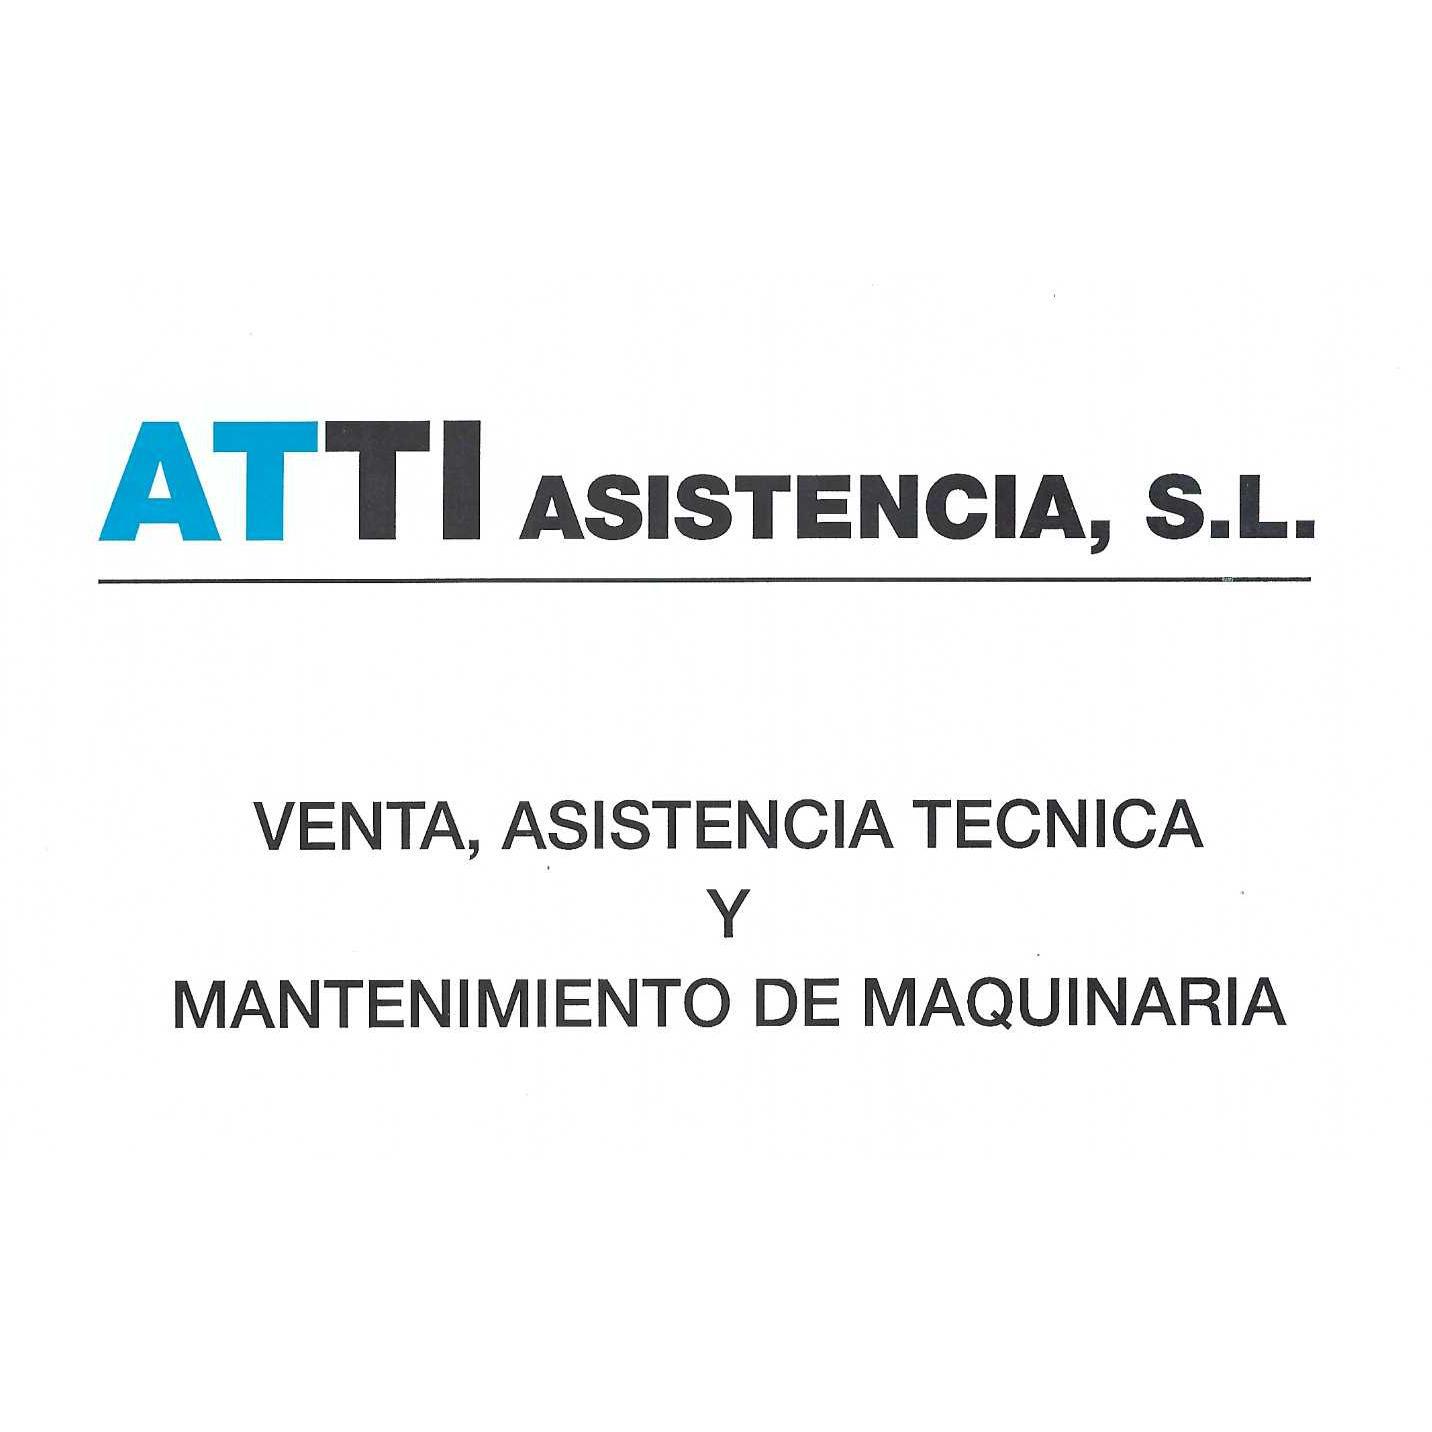 Atti Asistencia Sl Logo